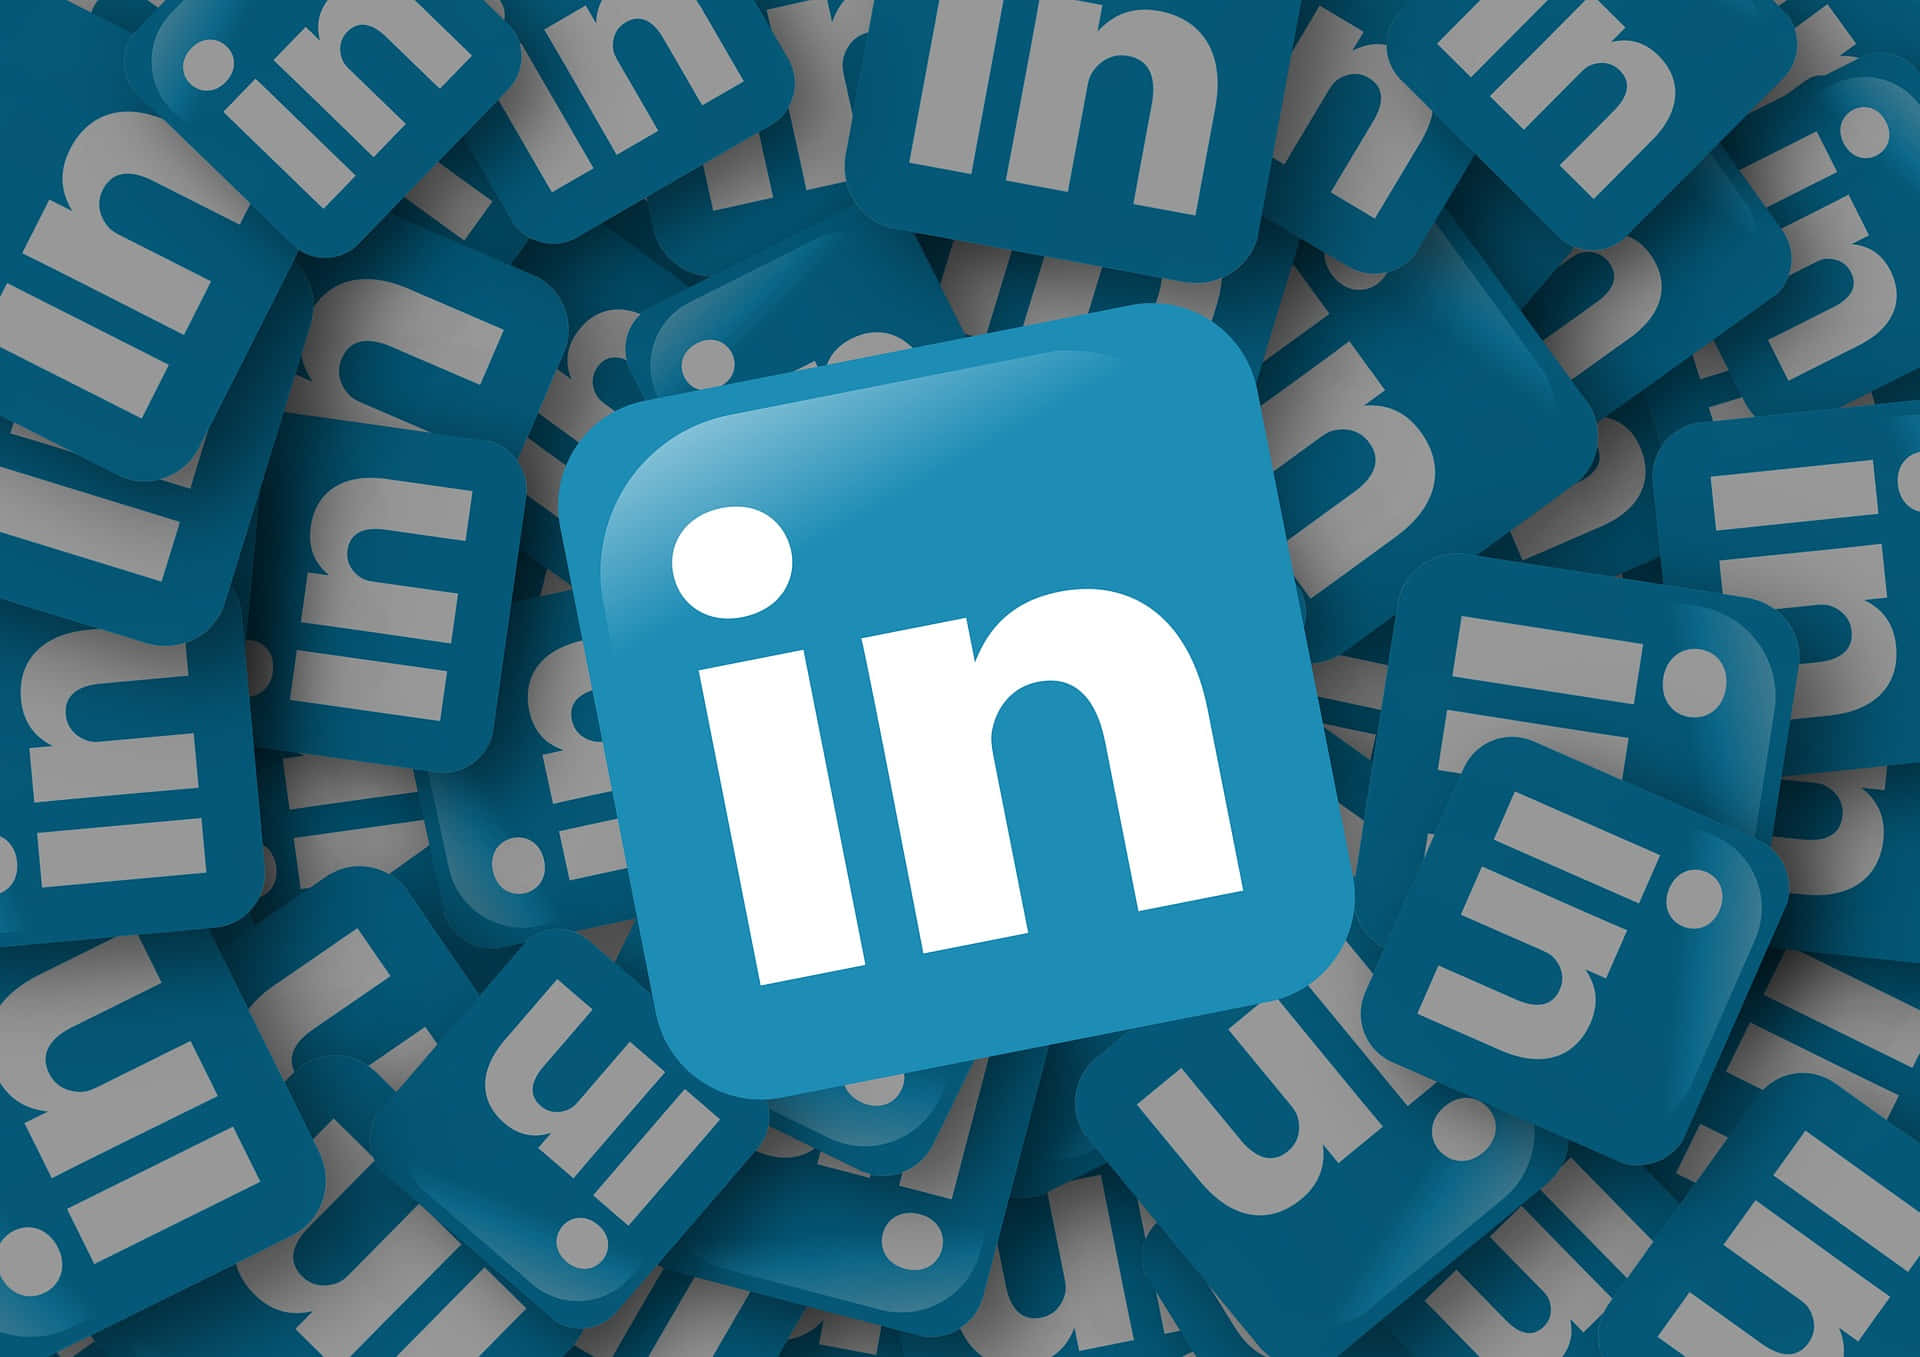 Maximum Visibility&Impact on LinkedIn